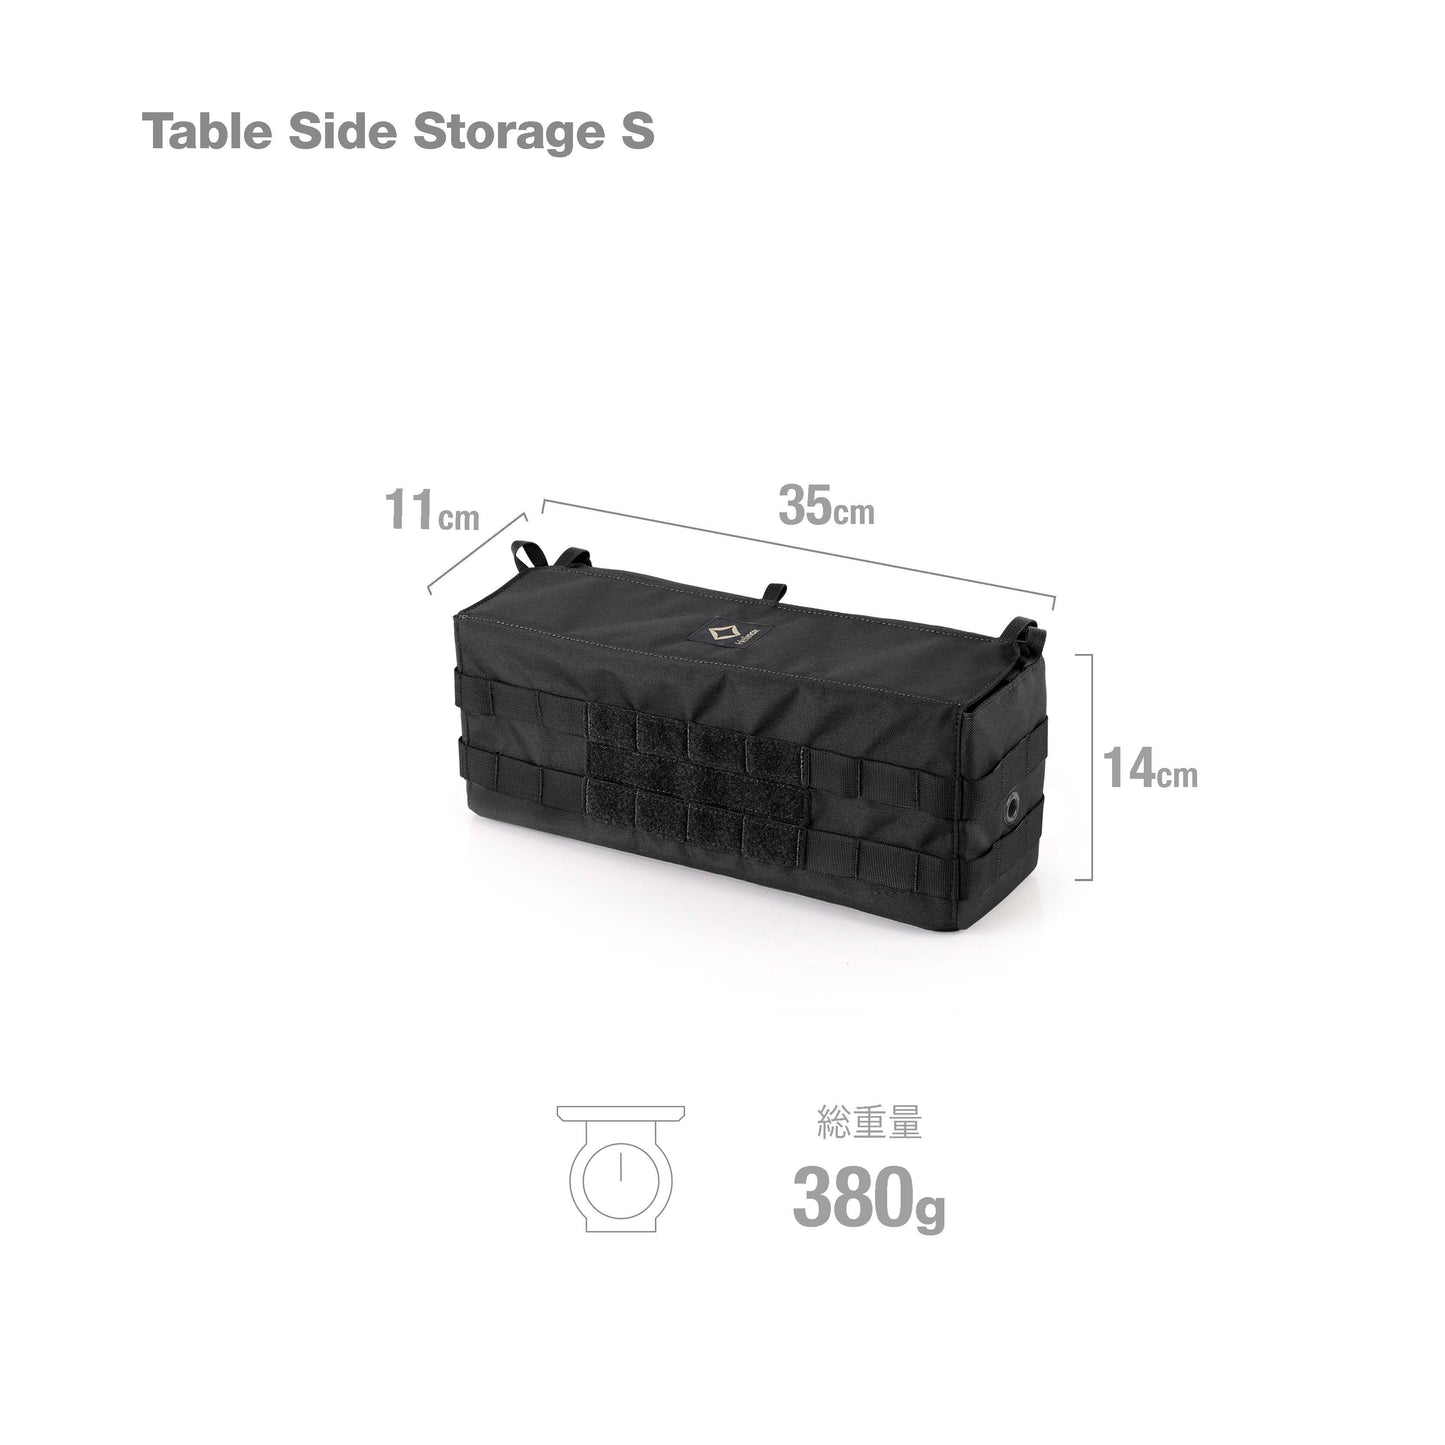 Tac. Table Side Storage S - Black